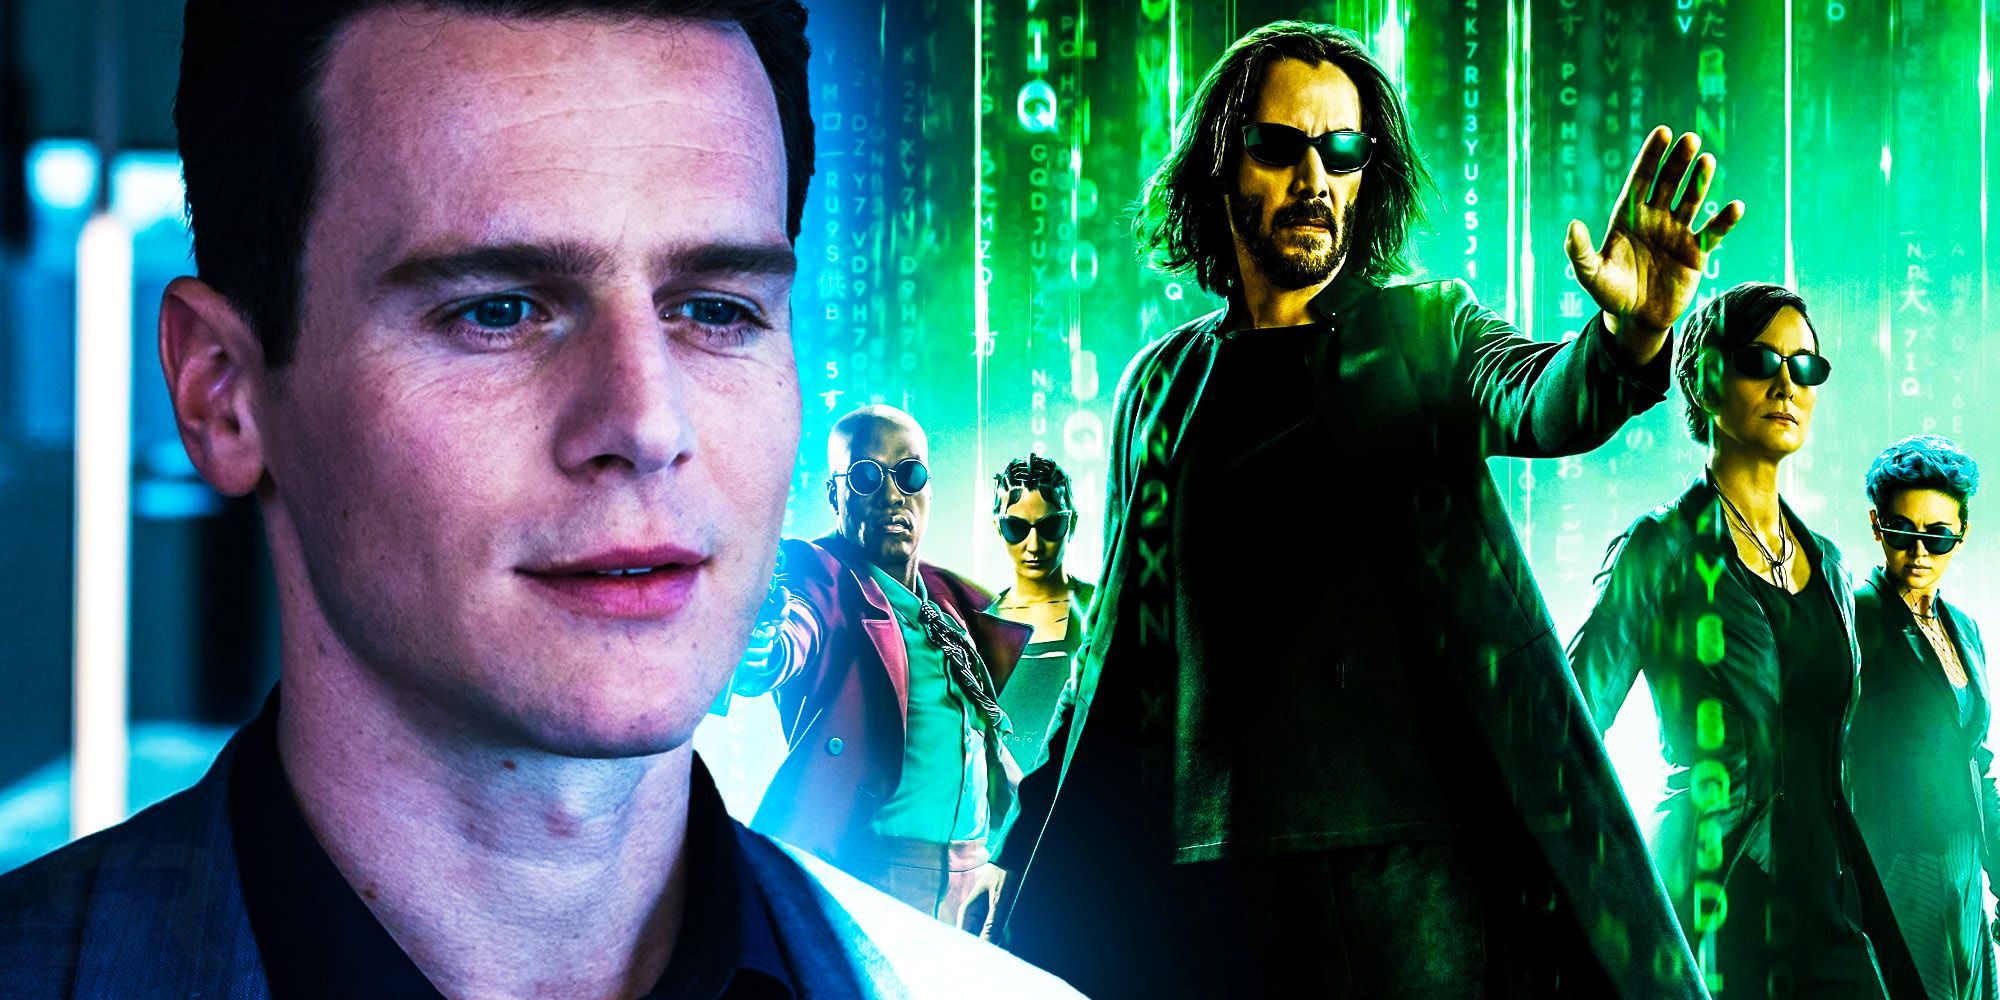 Major Matrix Revolutions Character Confirmed for Resurrections